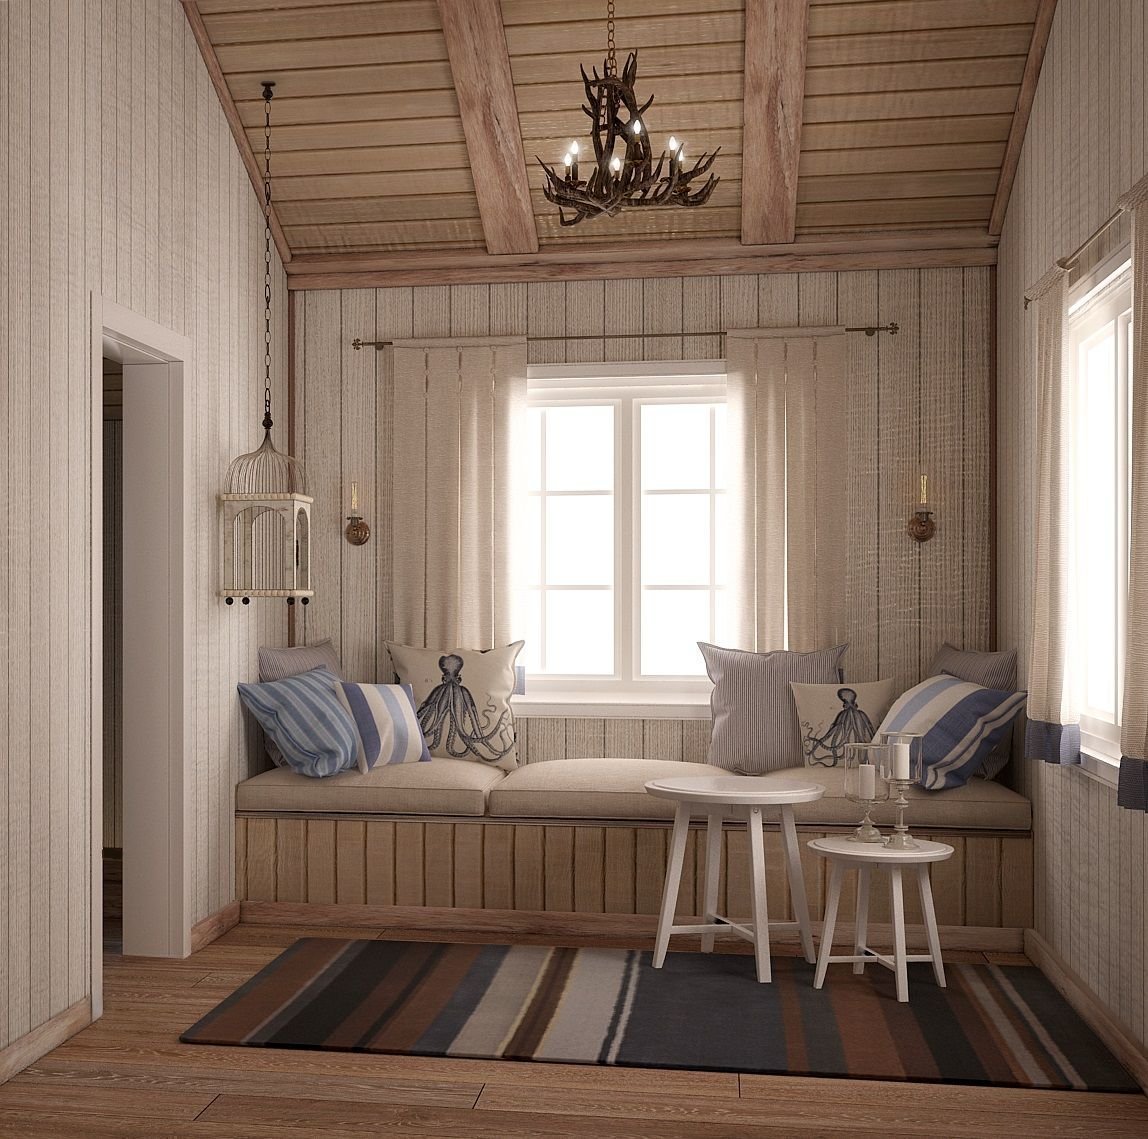 Интерьер дачного дома в скандинавском стиле